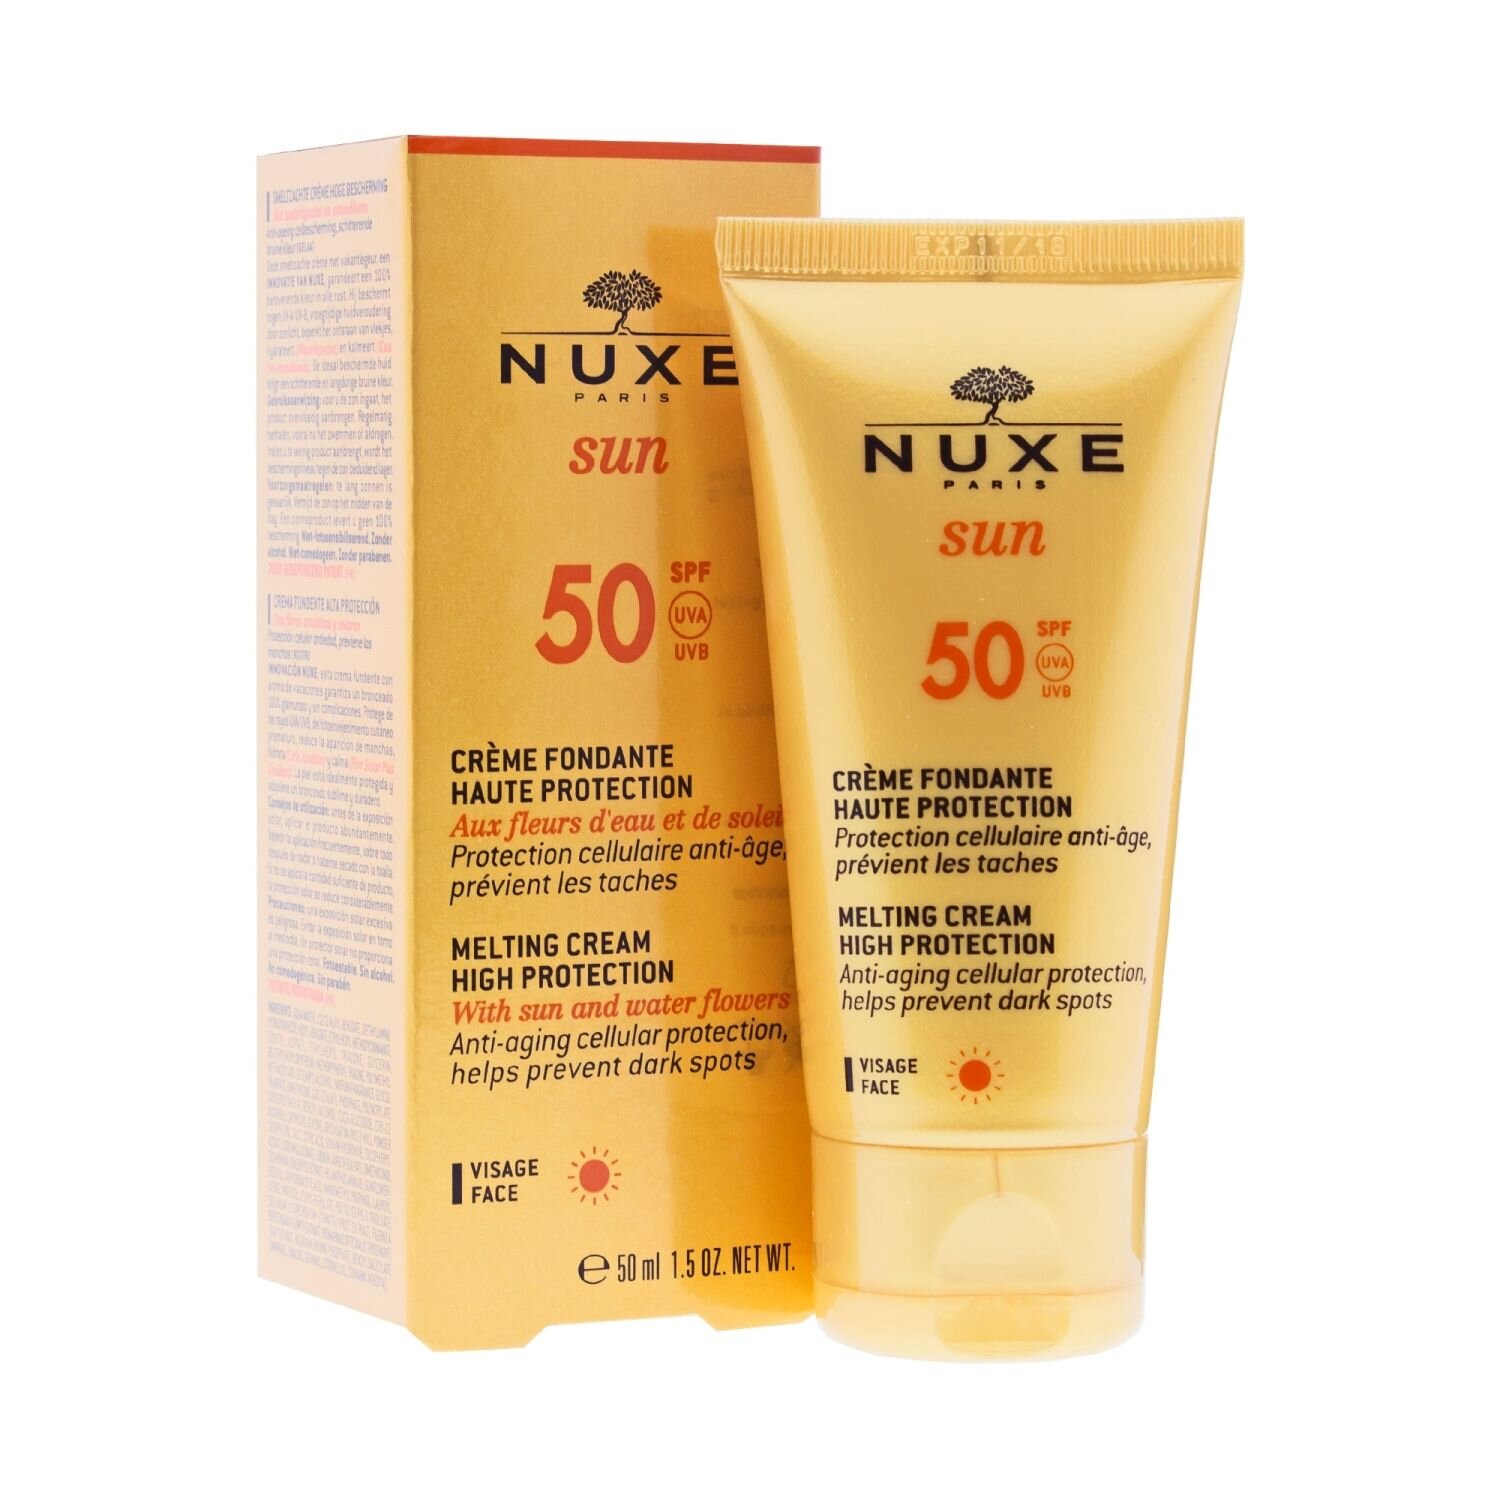 nuxe-sun-facial-cream-spf50-50ml.jpg